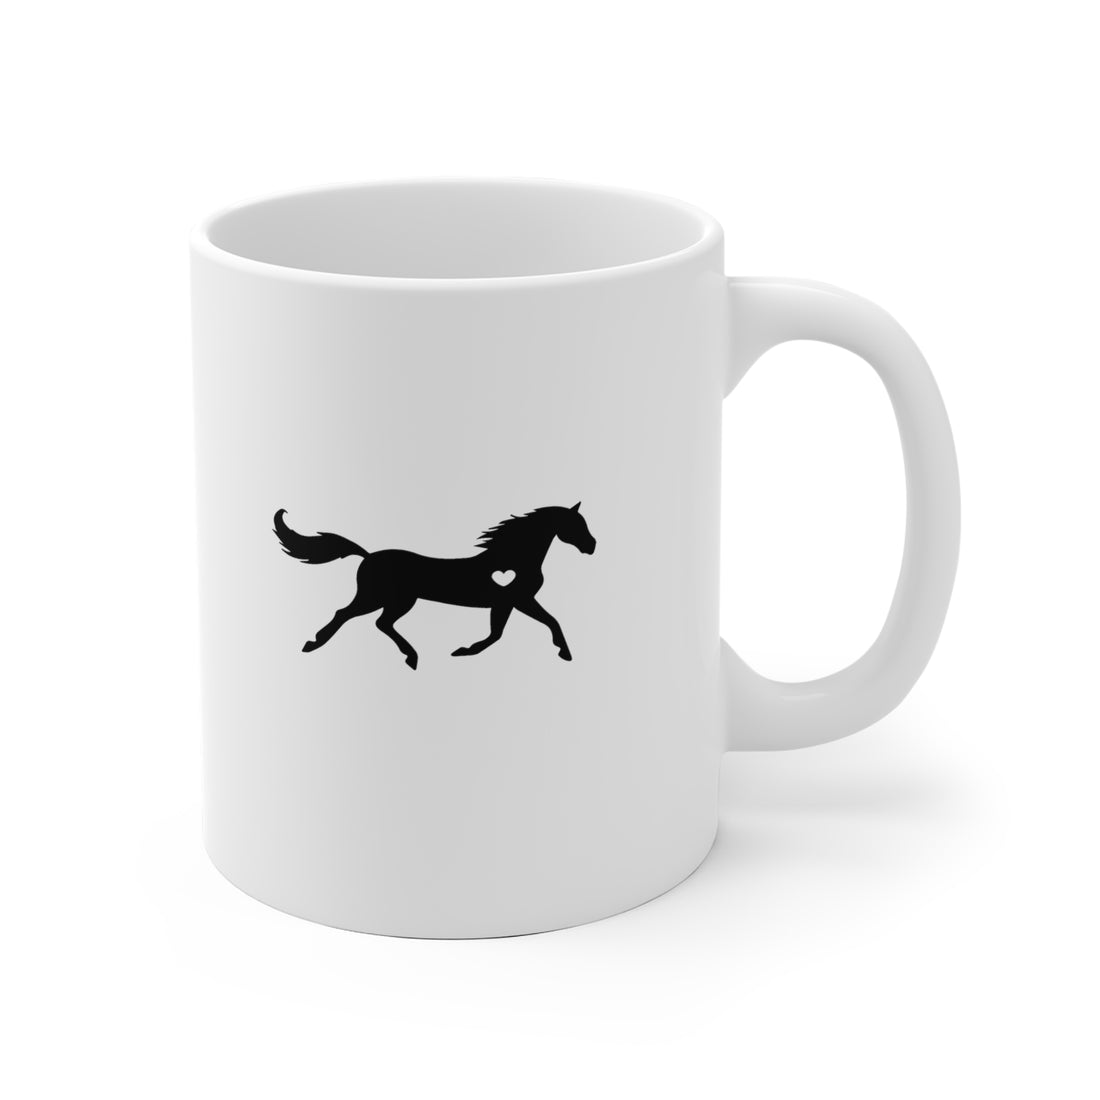 Horse Heart - White Ceramic Mug 2 sizes Available